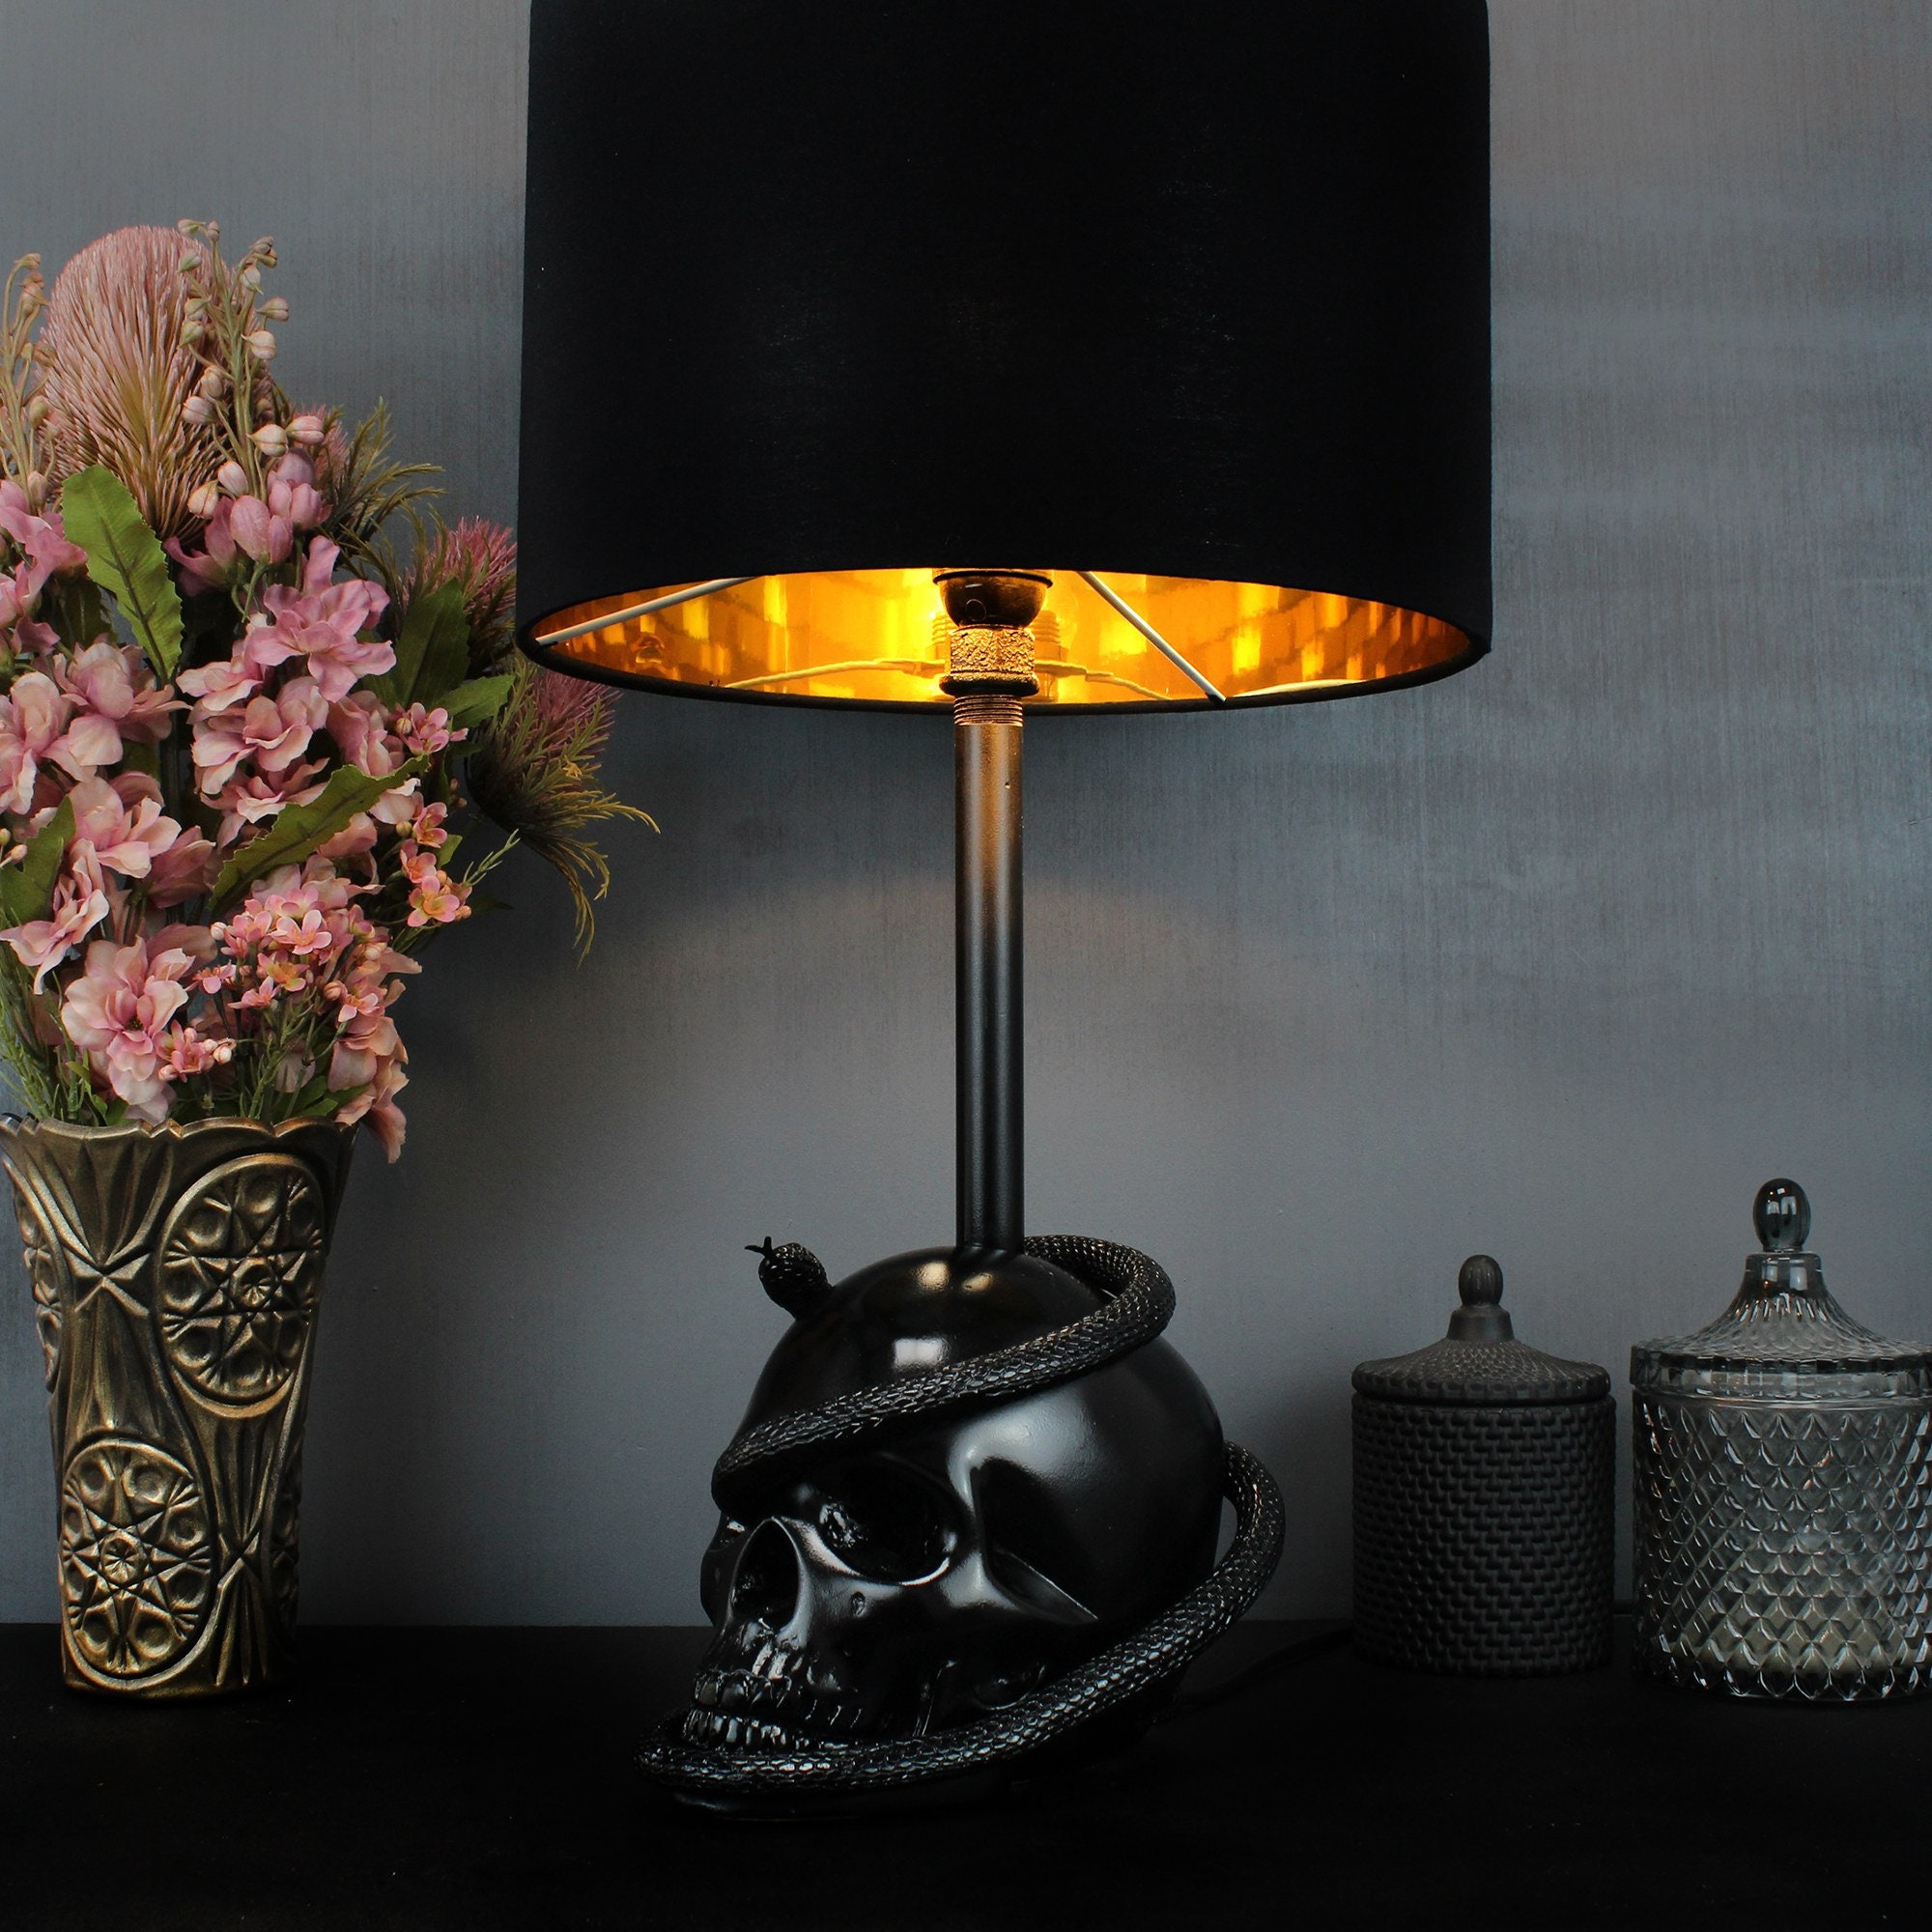 3D LED Lamp Skull Bedside Table Lamp Skull Color Change Horror Skull